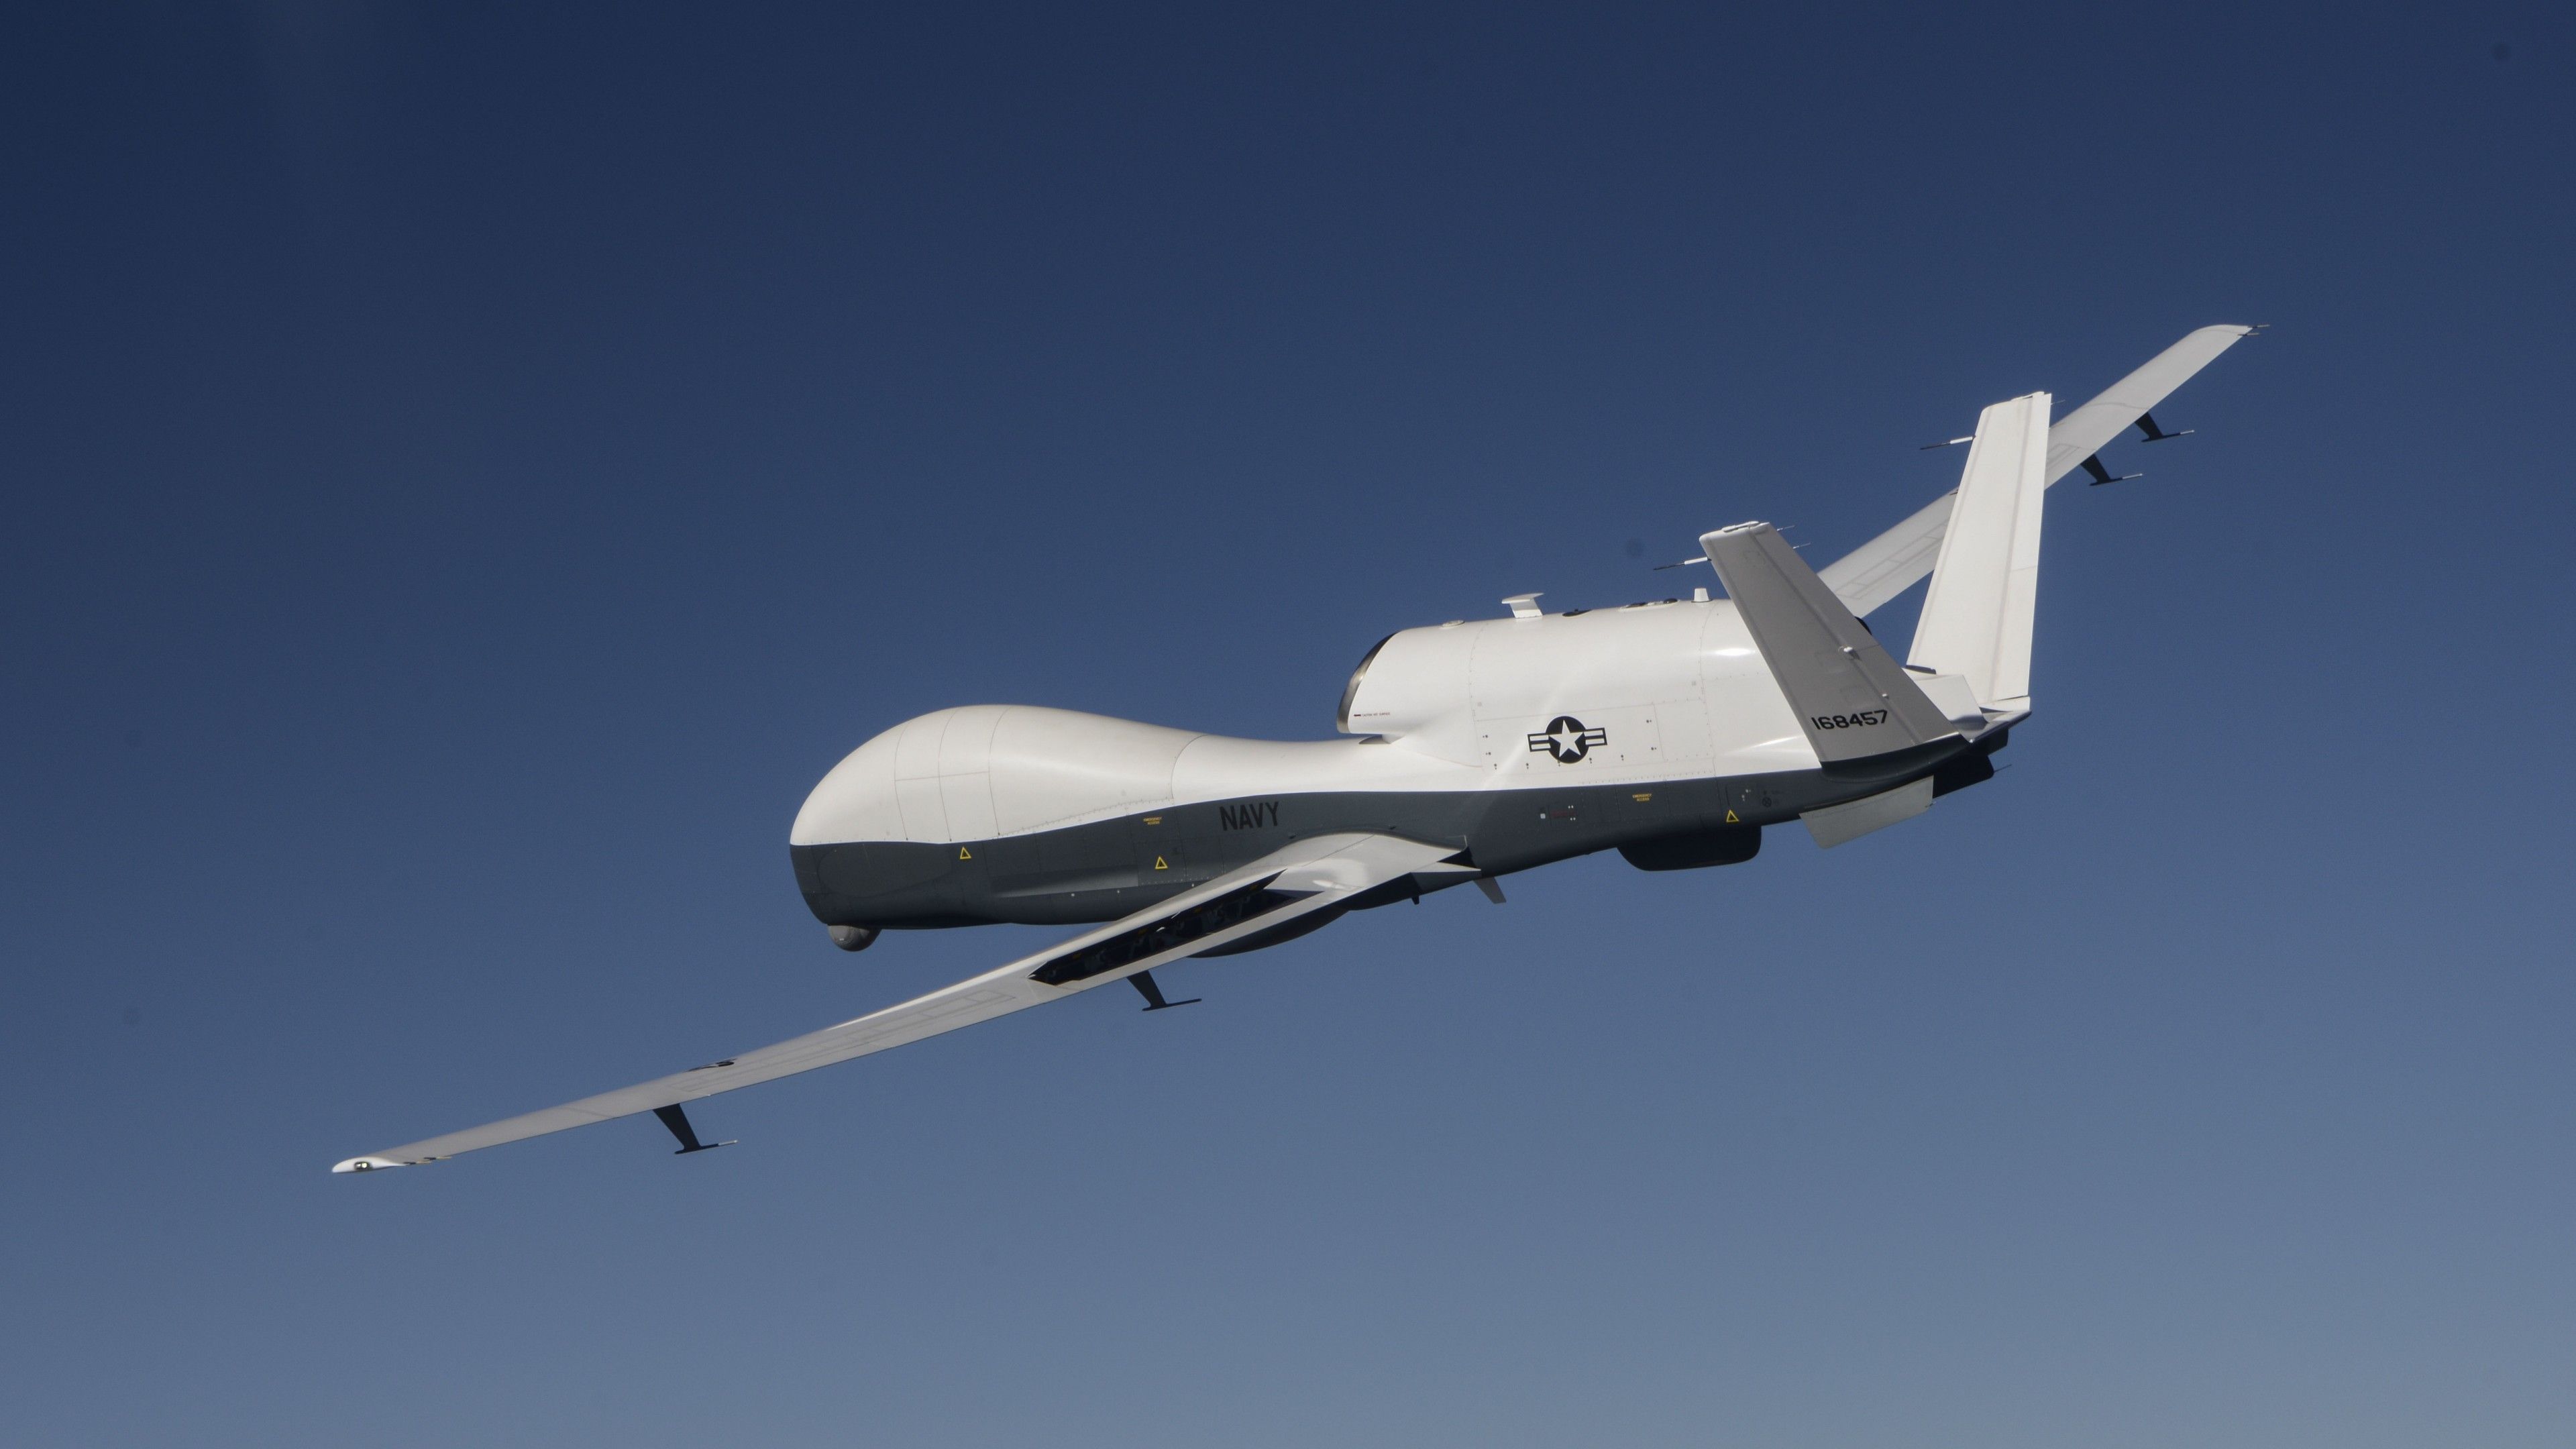 Wallpaper MQ 4C Triton, MQ 4C, Drone, Surveillance UAV, USA Army, Landing, Military